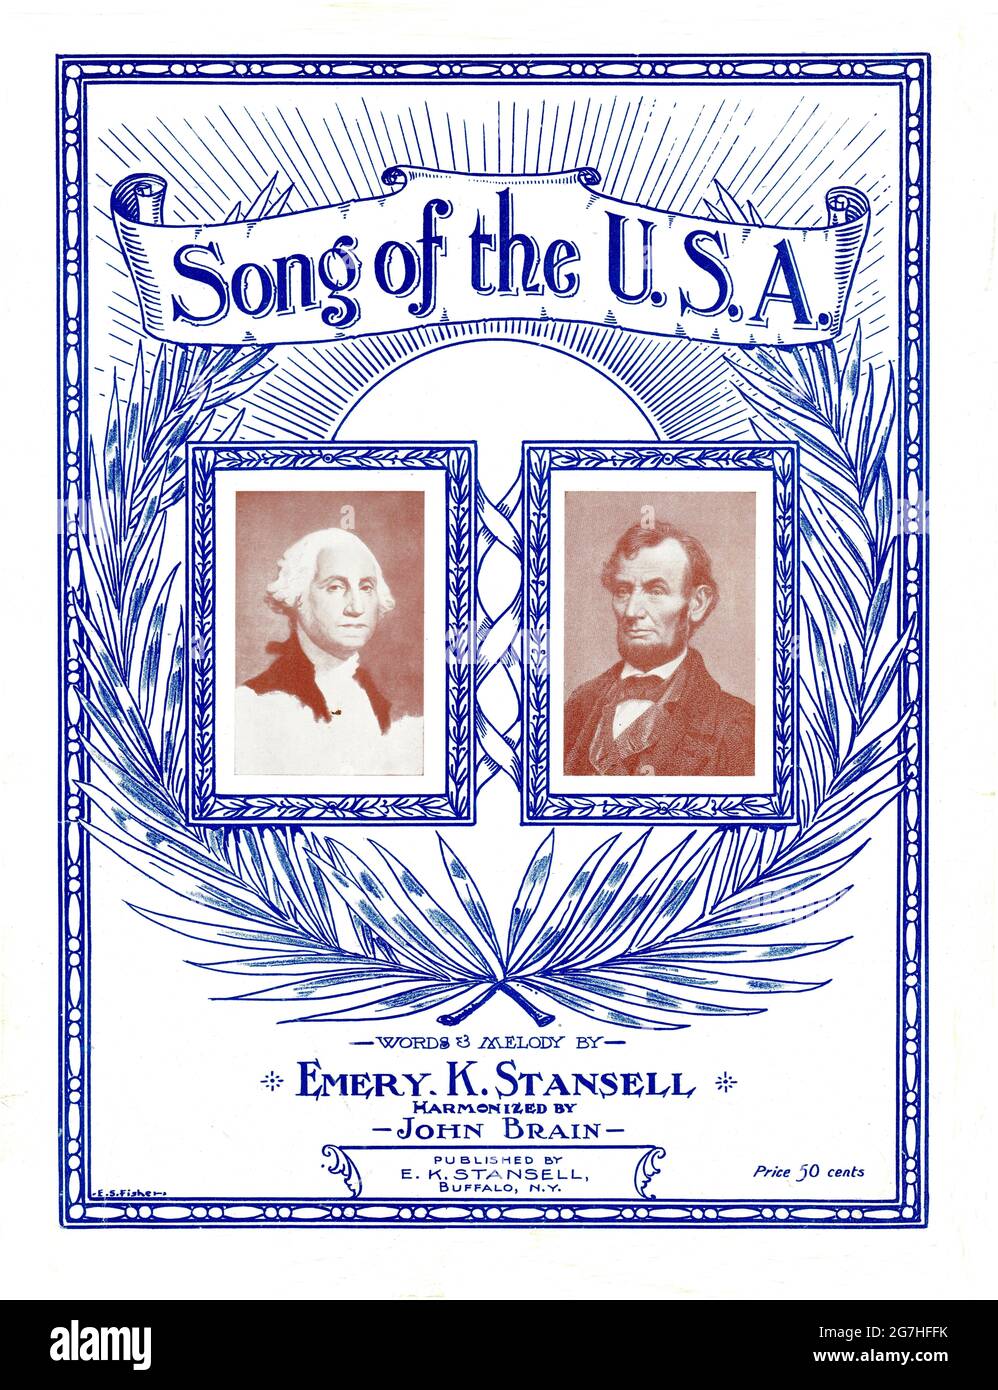 Canzone degli Stati Uniti, 1915 spartiti musicali con illustrazioni/ritratti di George Washington e Abraham Lincoln. Foto Stock